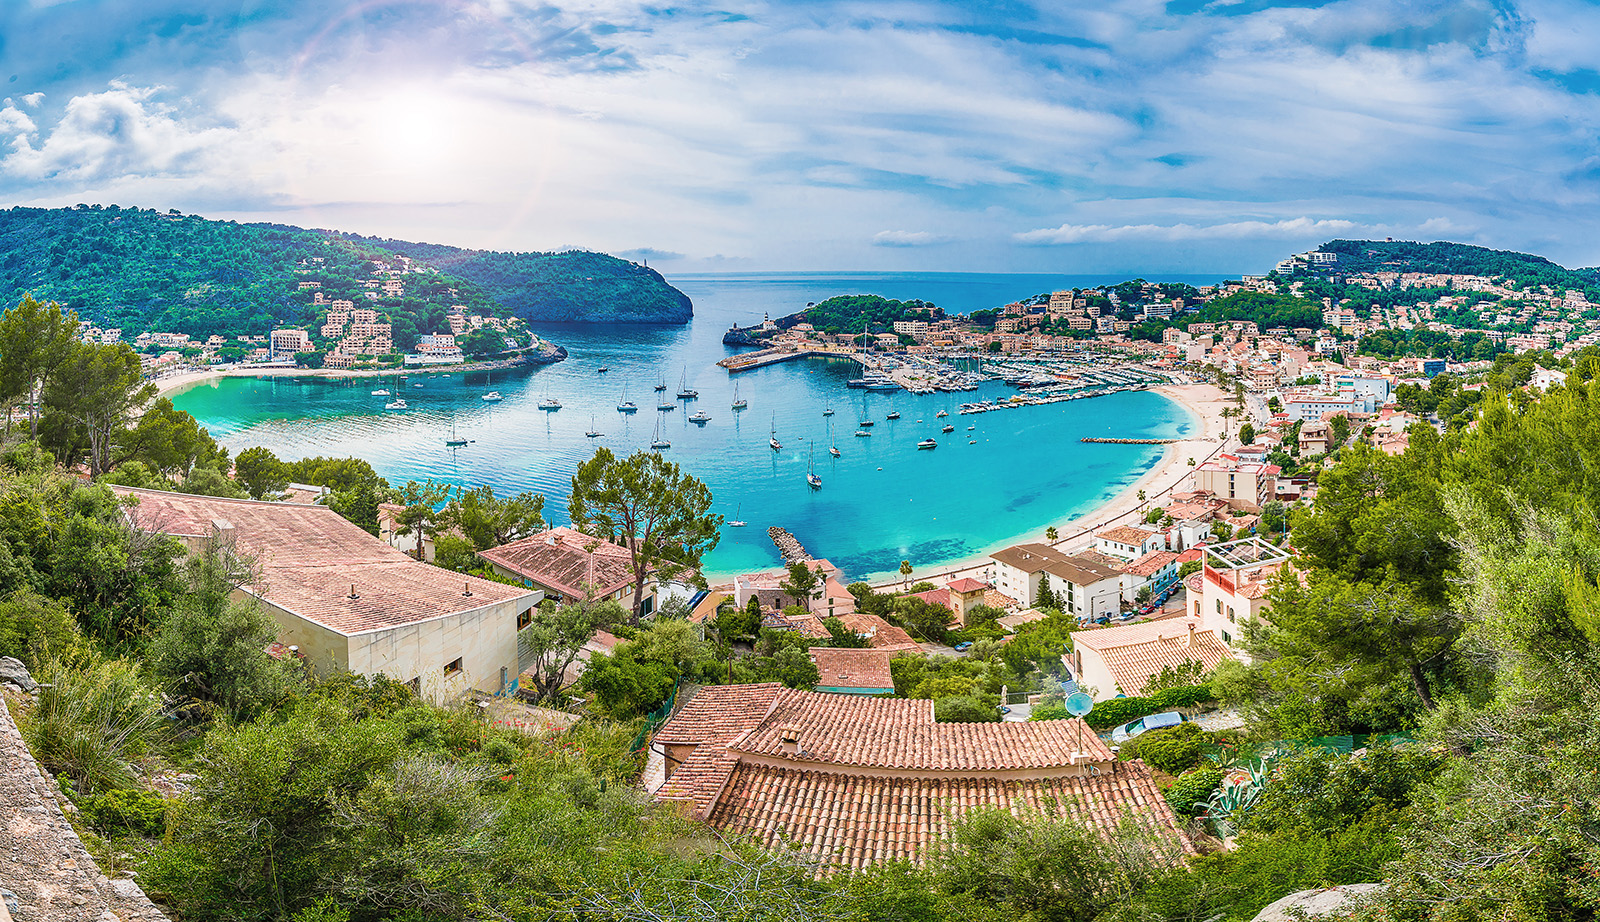 Porte de Soller, Palma Mallorca, Schöne Bucht mit Schiffen, blauem Wasser, Urlaub Mallorca